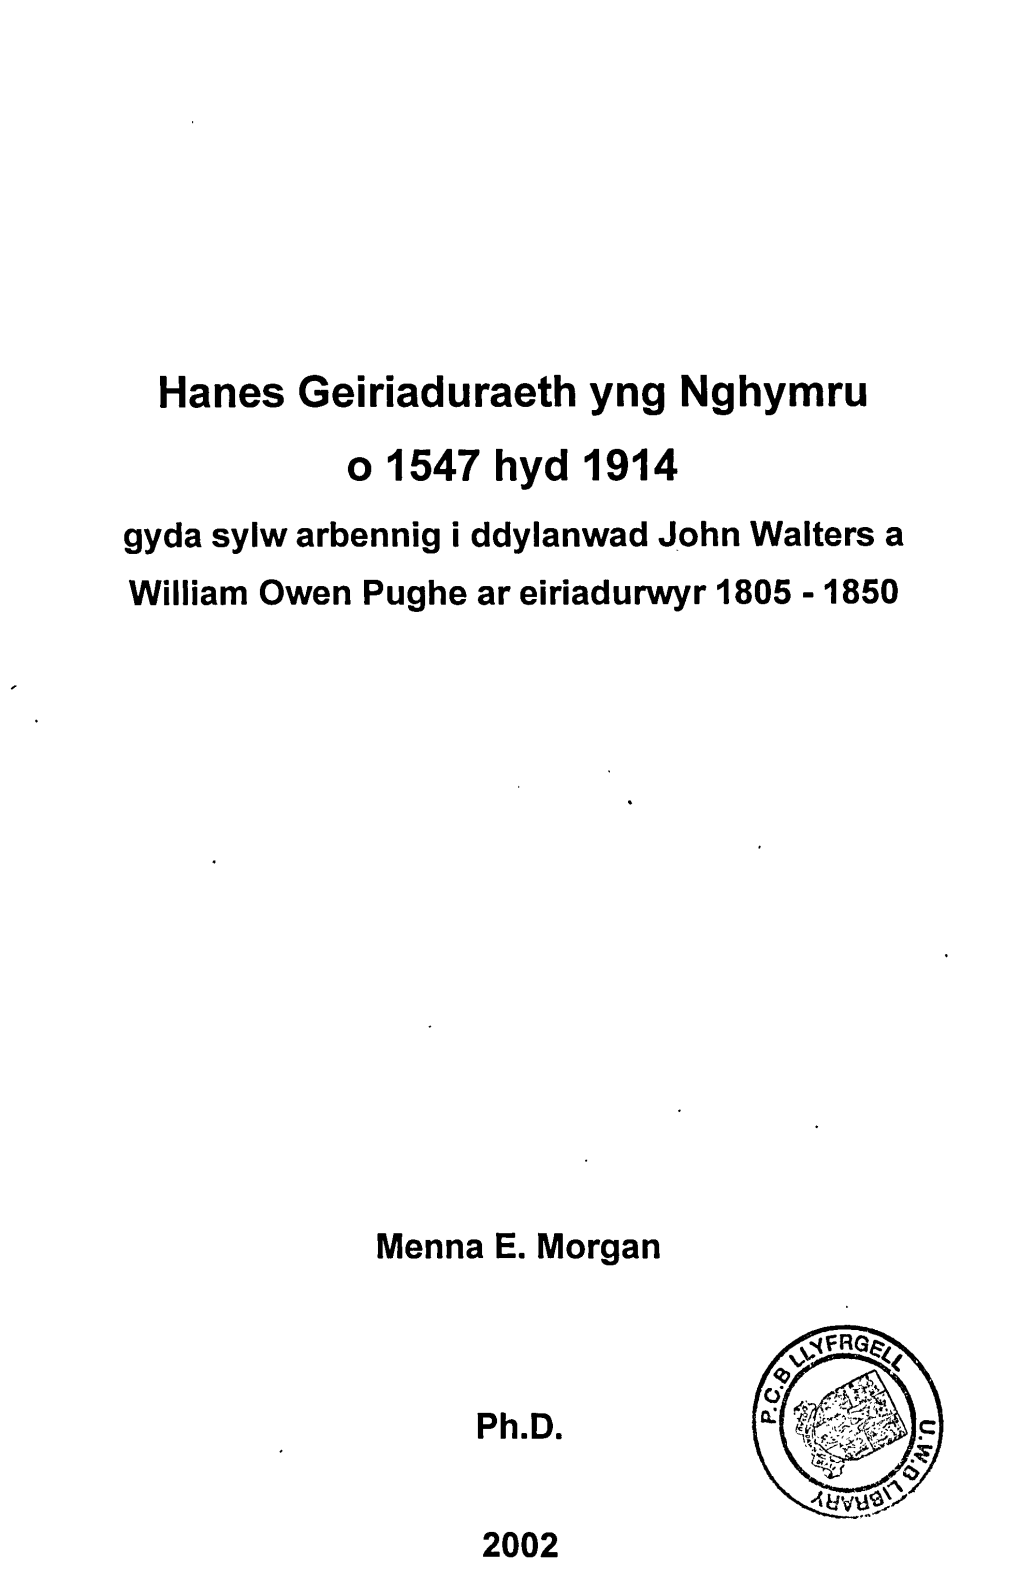 Gyda Sylw Arbennig I Ddylanwad John Walters a William Owen Pughe Ar Eiriadurwyr 1805 -1850